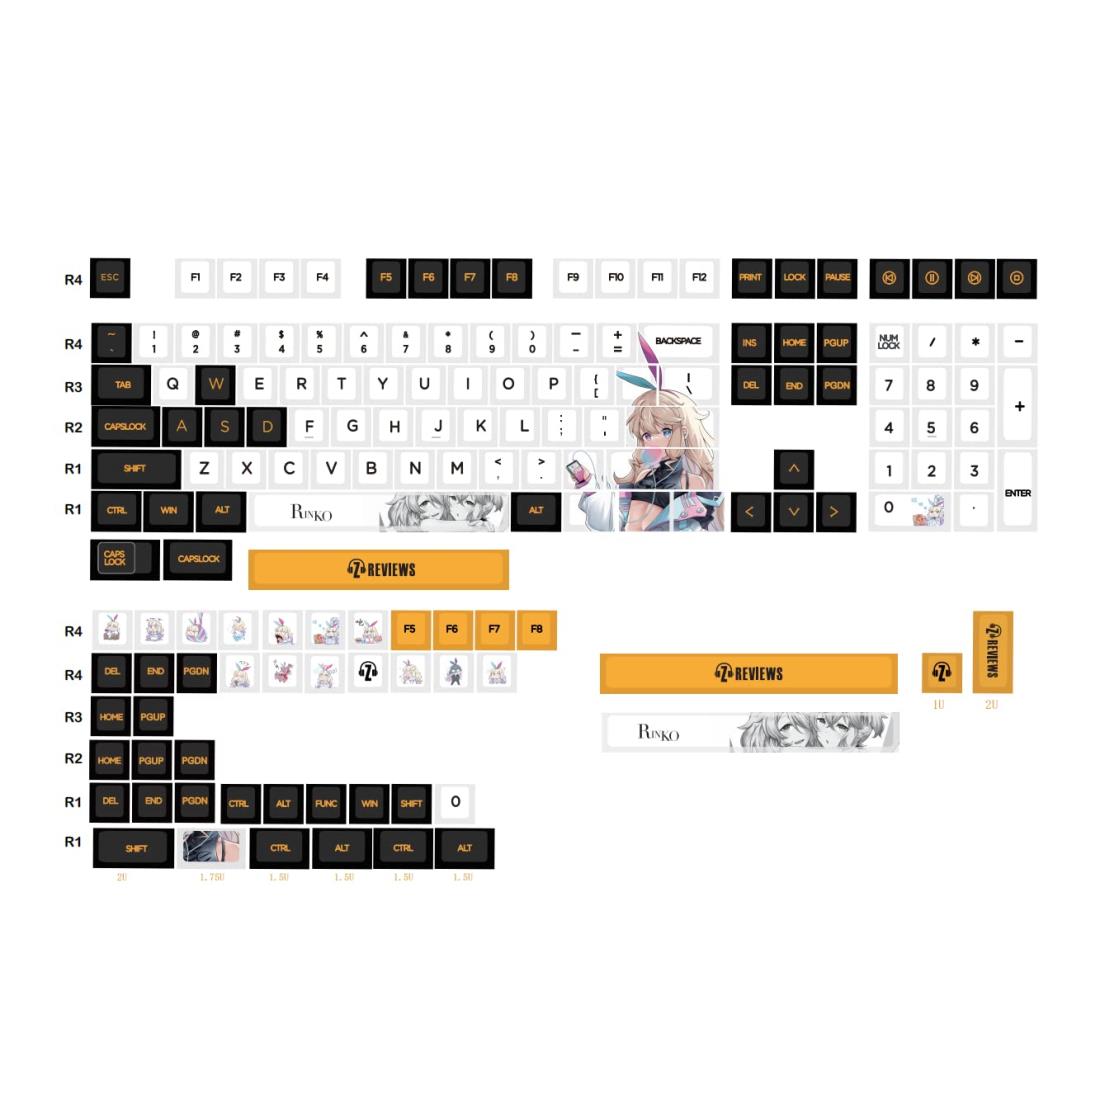 スタイル：CARTON◆商品名：Mechkeys x Z Review Rinko To uch キーキャップ 156 键 keycaps キーキャップ 键帽 60%、65%、TKL、75%、96%、フルサイズのキーボードに対応 (Rinko To uch)専用のRinkoデザイン: Rinko To uchキーキャップは、IEM用に開発されたRinko Characterに基づいたユニ ークなデザインテーマが特徴です。 このセットは、職人のキーキャップのセットを通してキャラクターの外観を完成させます。 リンコ タッチが完成すると、すべてのキーボードがユニ ークで排他的な外観になります!!【さまざまなレイアウトに対応】Rinko To uchキーキャップは、1セットで156個のキーがパッケージ化されています。 それらは、60%、65%、75%、およびそれ以上の範囲のさまざまなレイアウトを完成させます。 このセットには、ビルドを簡単に完了するために必要なすべてのキーが含まれています。 凛子キャラクターの外観は、フルサイズの 87 キー フォーム ファクター用に特別に設計されています。他の人はビルドを完了することができますが、凛子キャラクターはそれらで完成する場合としない場合があります。チェリー プロファイル デザイン: リンコ タッチ キーキャップは、チェリー プロファイルで設計されています。 Cherry Profile は広く使用されているだけでなく、ユーザーに快適なタイピング体験を提供します。 ANSI レイアウトと互換性があり、MX および MX スタイルのスイッチと完全に連携します。昇華型 PBT 素材ビルド: Rinko To uch キーキャップは長持ちするように設計されており、高品質の昇華型プロセスを使用して作られています。 伝説とデザインはすぐには消えません。 Rinko To uch キーキャップは、耐久性と寿命で知られる高品質の PBT 素材でできています。Rinko IEM と完全に一致: Rinko タッチ キーキャップは、最近リリースされた Rinko IEM と一致するように設計されています。 Rinko IEMは、ダイナミックドライバーと平面ドライバーユニットを組み合わせたデュアルドライバーハイブリッドコンビネーションにより、優れたサウンドを実現する高品質のサウンドを誇ります。 See Audio は、高度な 3D プリント技術を使用して複雑なキャビティ構造を設計し、ドライバーと快適な形状の両方を実装しています。 パワフルなサウンドと優れたディテールも備えています。 Rinko To uch KeycapsとRinko IEMをセットでご提供!!注意: TKL & フルサイズ レイアウトは、Rinko Character Artisan Keycaps と完全に一致し、キャラクターを完全に表示します。 60%、65%、75%、96% などの他のレイアウト Rinko To uch キーキャップはそれらで動作しますが、一部のキーには通常のキーキャップを使用する必要がある場合があります (パッケージからのみ)。 これらのレイアウトで完了します。 特徴: ＞メカキーズやゼオスとのコラボ企画(Zレビュー)。 ＞凛子専用デザインテーマ。 ＞高品質の PBT 素材。 ＞チェリーのプロフィール。 ＞マルチカラー プロファイル。 ＞染料昇華プロセスで製造。 ＞MX および MX-Clone スイッチと広く互換性があります。 ＞デザイナーノベルティキー付き。 ＞合計156個のキー。 ＞主要なサイズのキーボード (60% 以上) と互換性があります。 ＞ANSI レイアウト。 ＞Rinko キーキャップは Rinko IEM と完全に一致します。 このセットには、60% 以上のさまざまなレイアウトを提供する 156 個のアーティスティ ックな印刷キーが含まれています。 このセットは、Z レビューで設計された Rinko IEM と一致するように設計されています。 Rinko IEM は、豊かなローエンド用の強力なダイナミック ドライバーと、超高周波数領域での優れた拡張用の高性能 6mm 平面磁気ドライバーを備えたデュアル ドライバー ハイブリッドの組み合わせを採用しています。